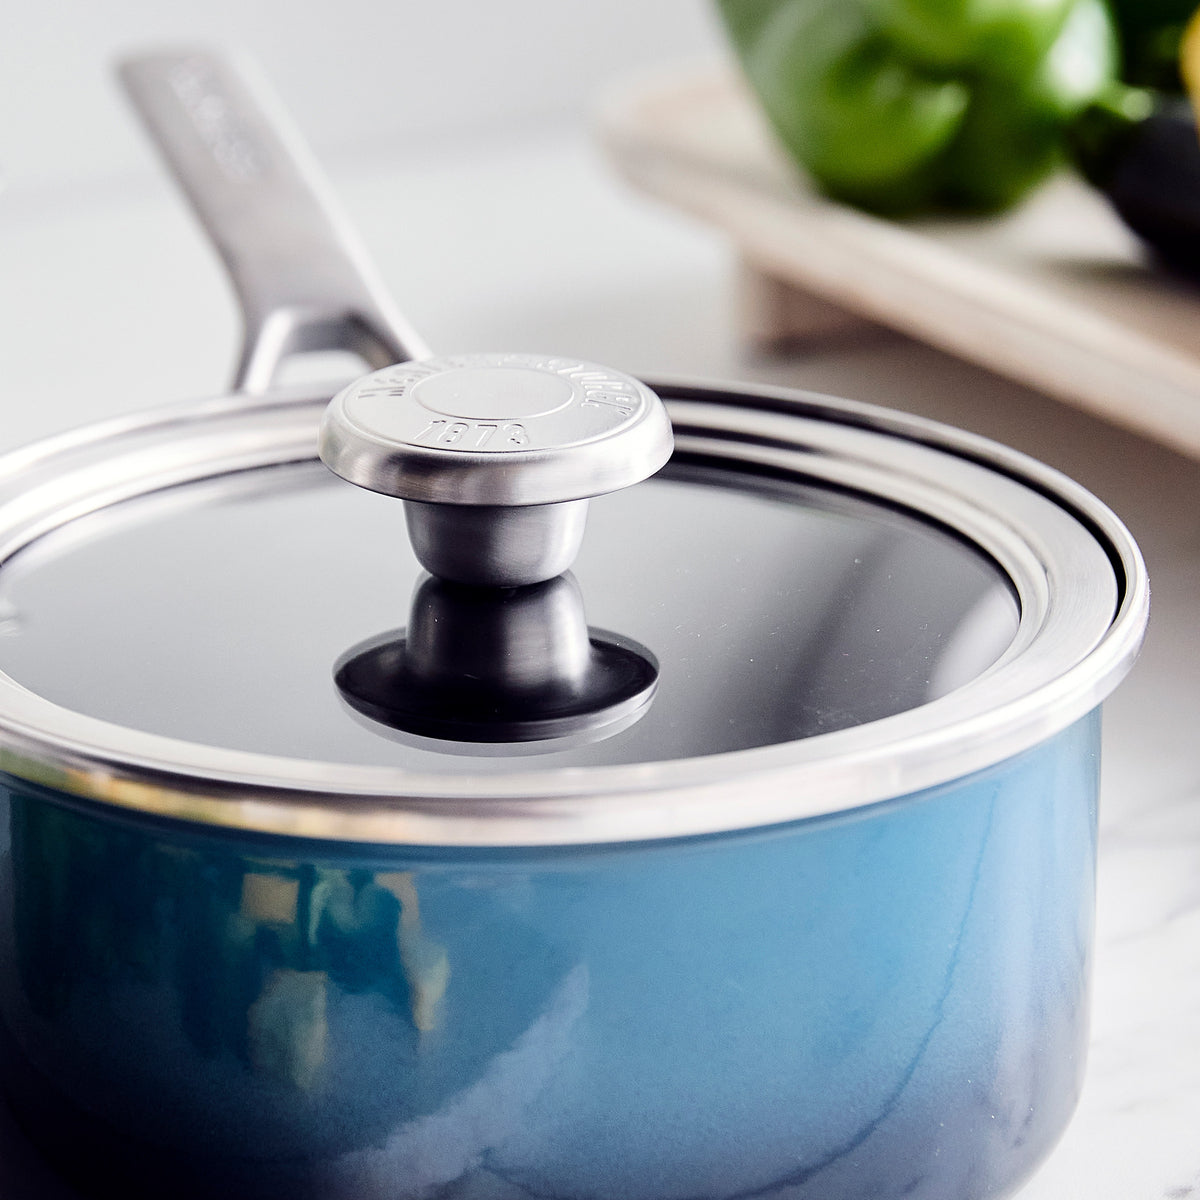  Non-Stick Aluminum 2 Handle Cooking Sauce Pot w/Glass Lid - 18  Cm 2.5 QT: Casseroles: Home & Kitchen